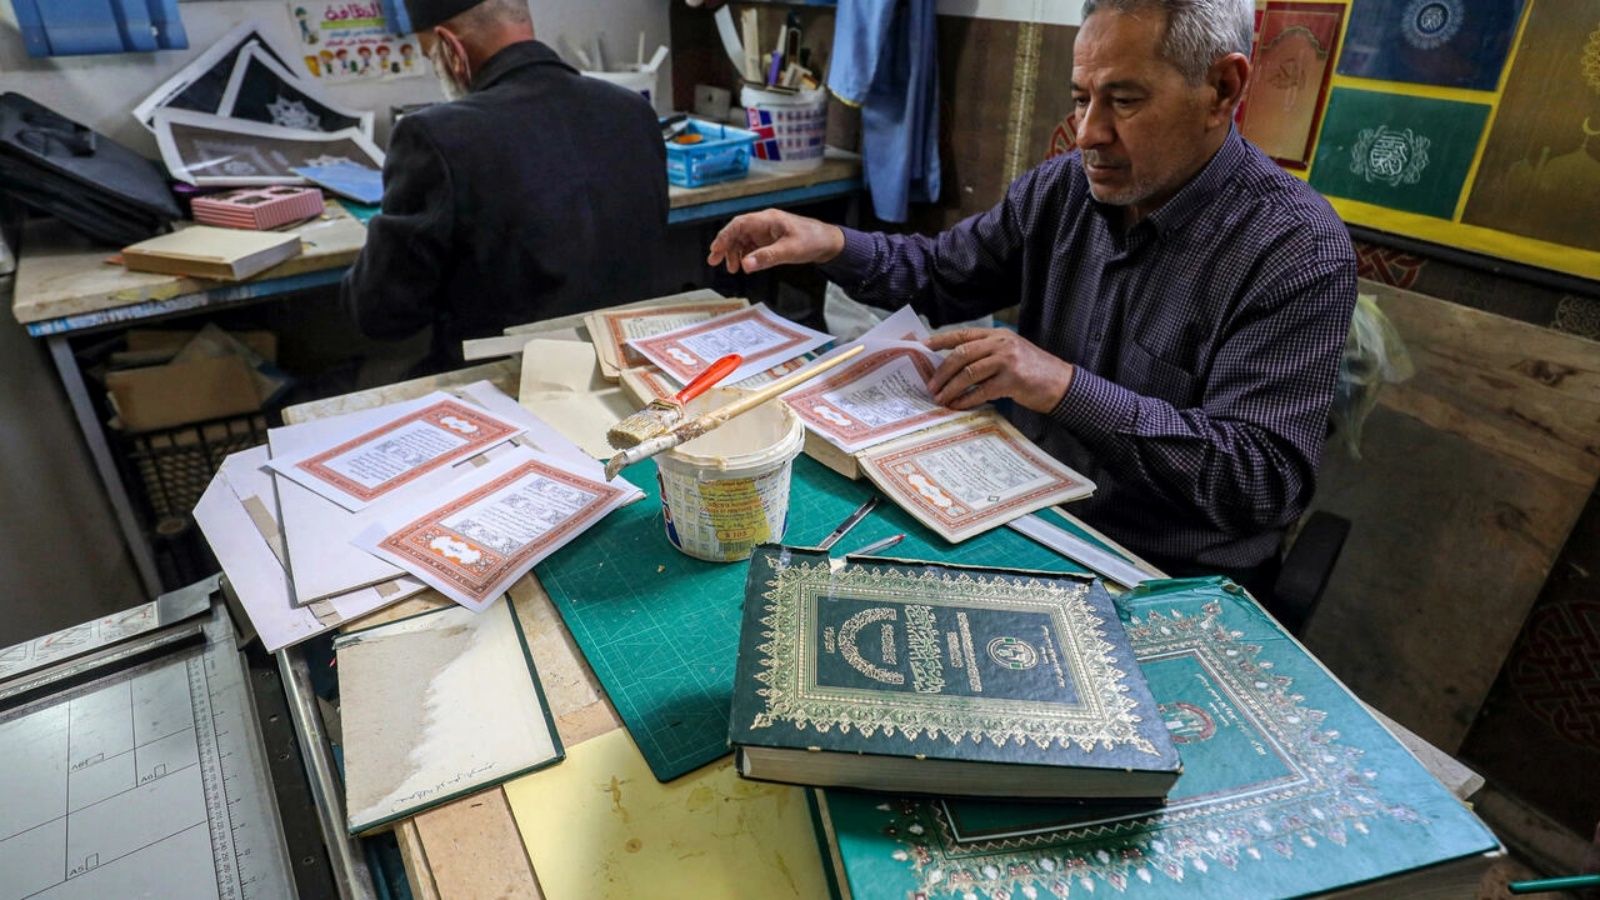 رجل يعمل على تأهيل مصحف قديم في إحدى الورش المخصصة للترميم في ليبيا